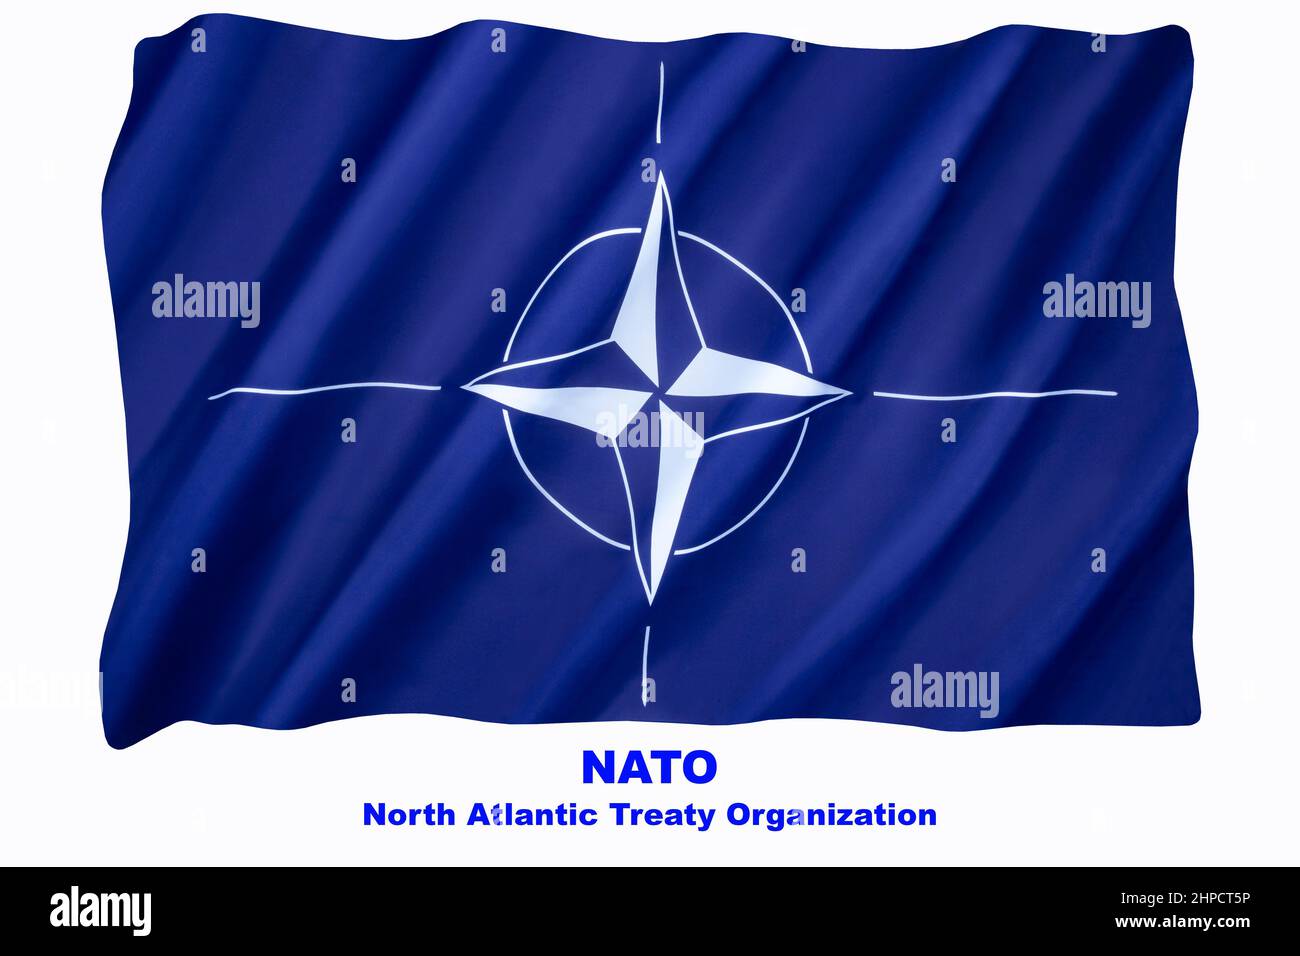 Bandera de la Organización del Tratado del Atlántico del Norte (OTAN) - adoptada tres años después de la creación de la organización, ha sido la bandera de la OTAN desde entonces Foto de stock